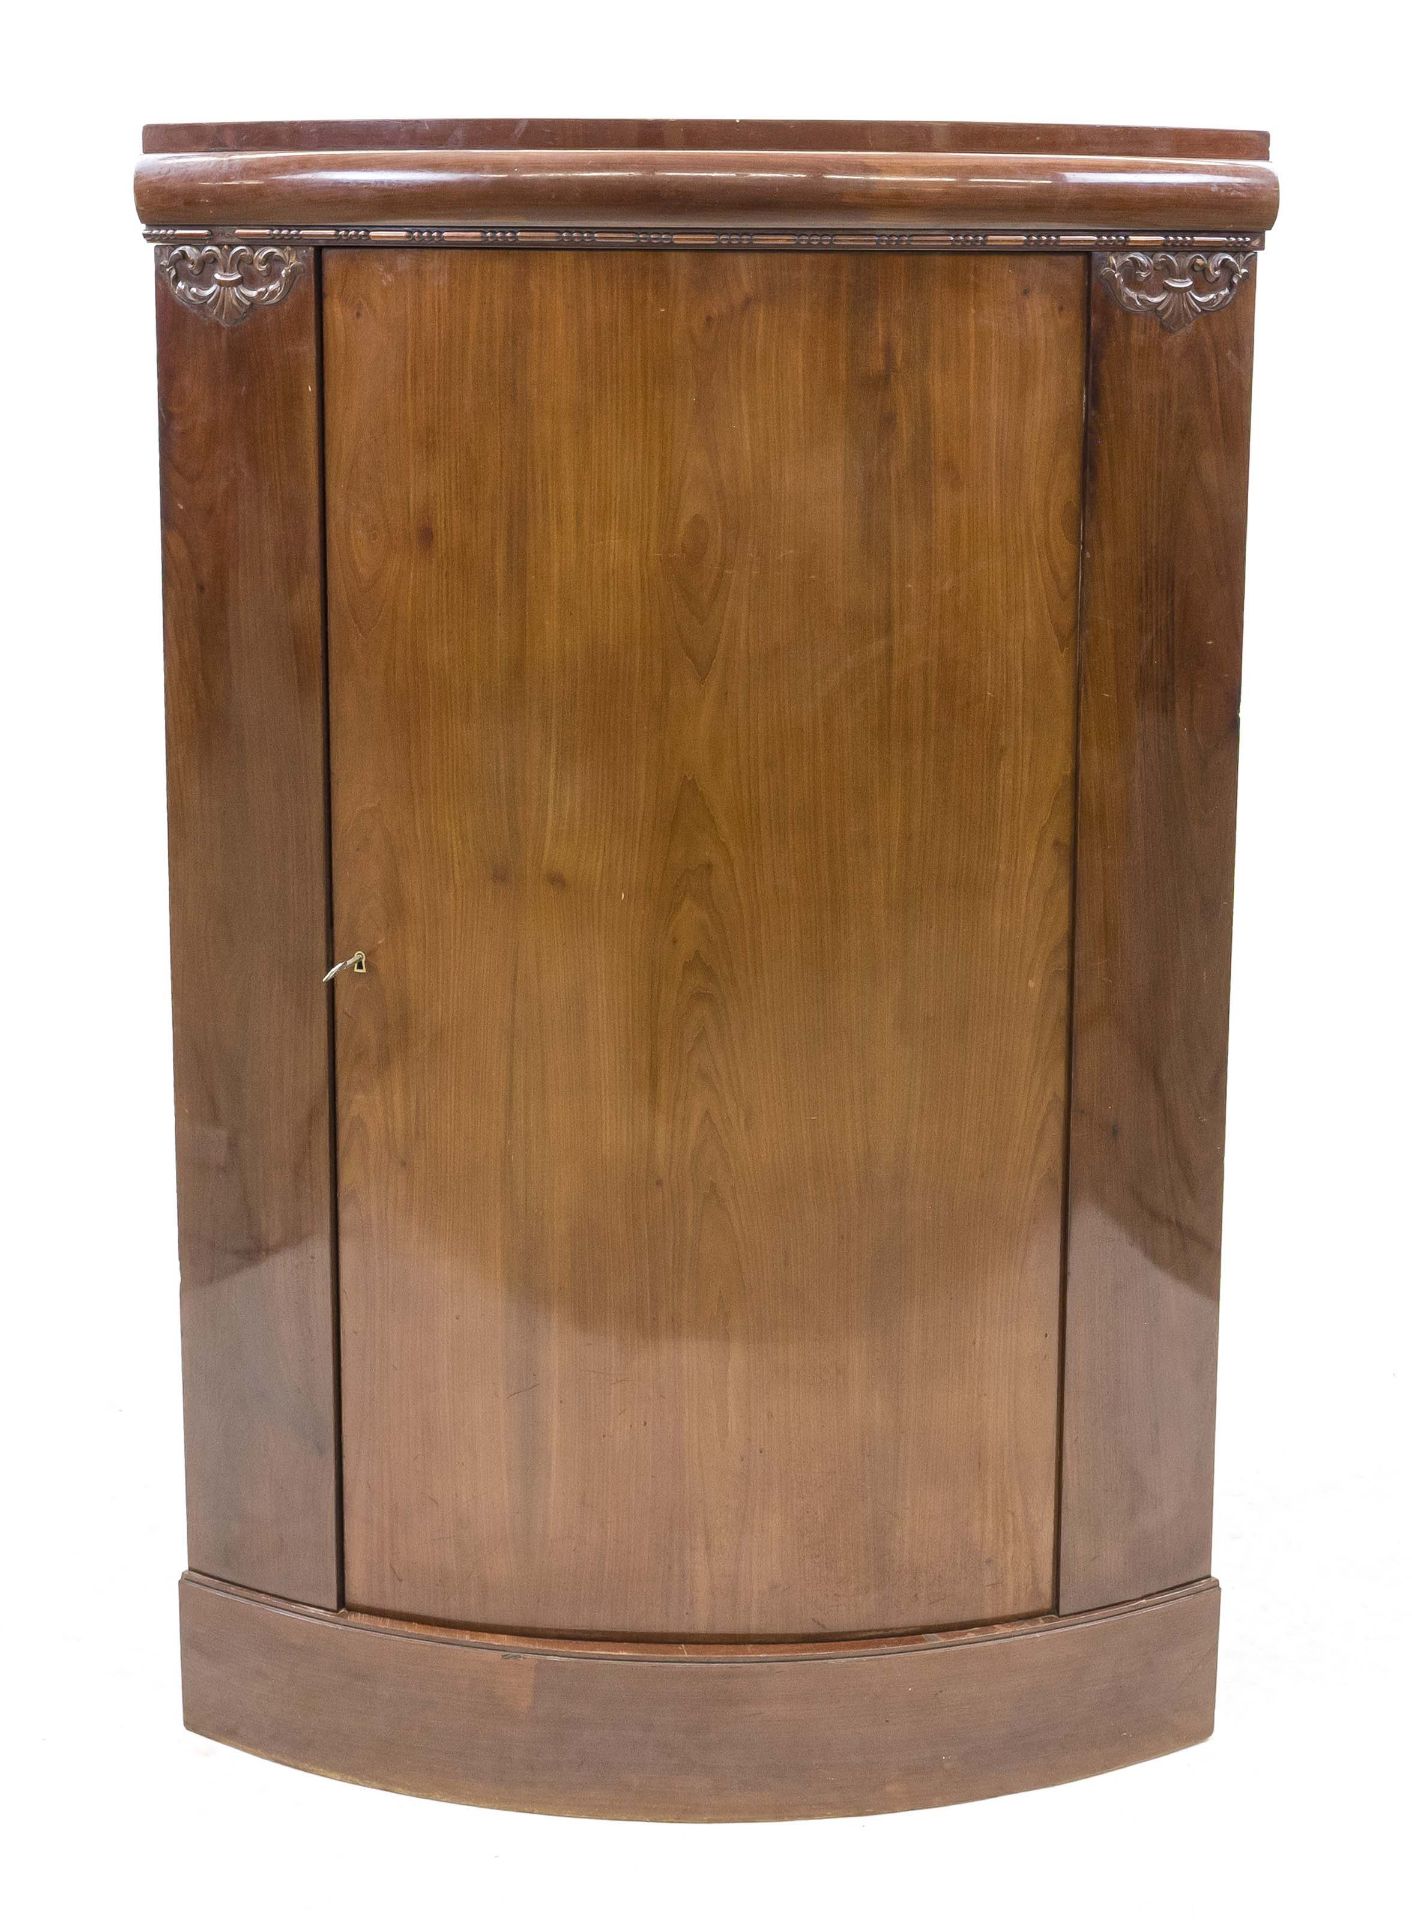 Danish corner cupboard in Biedermeier style around 1900, mahogany, 1-door body, 147 x 90 x 60 cm